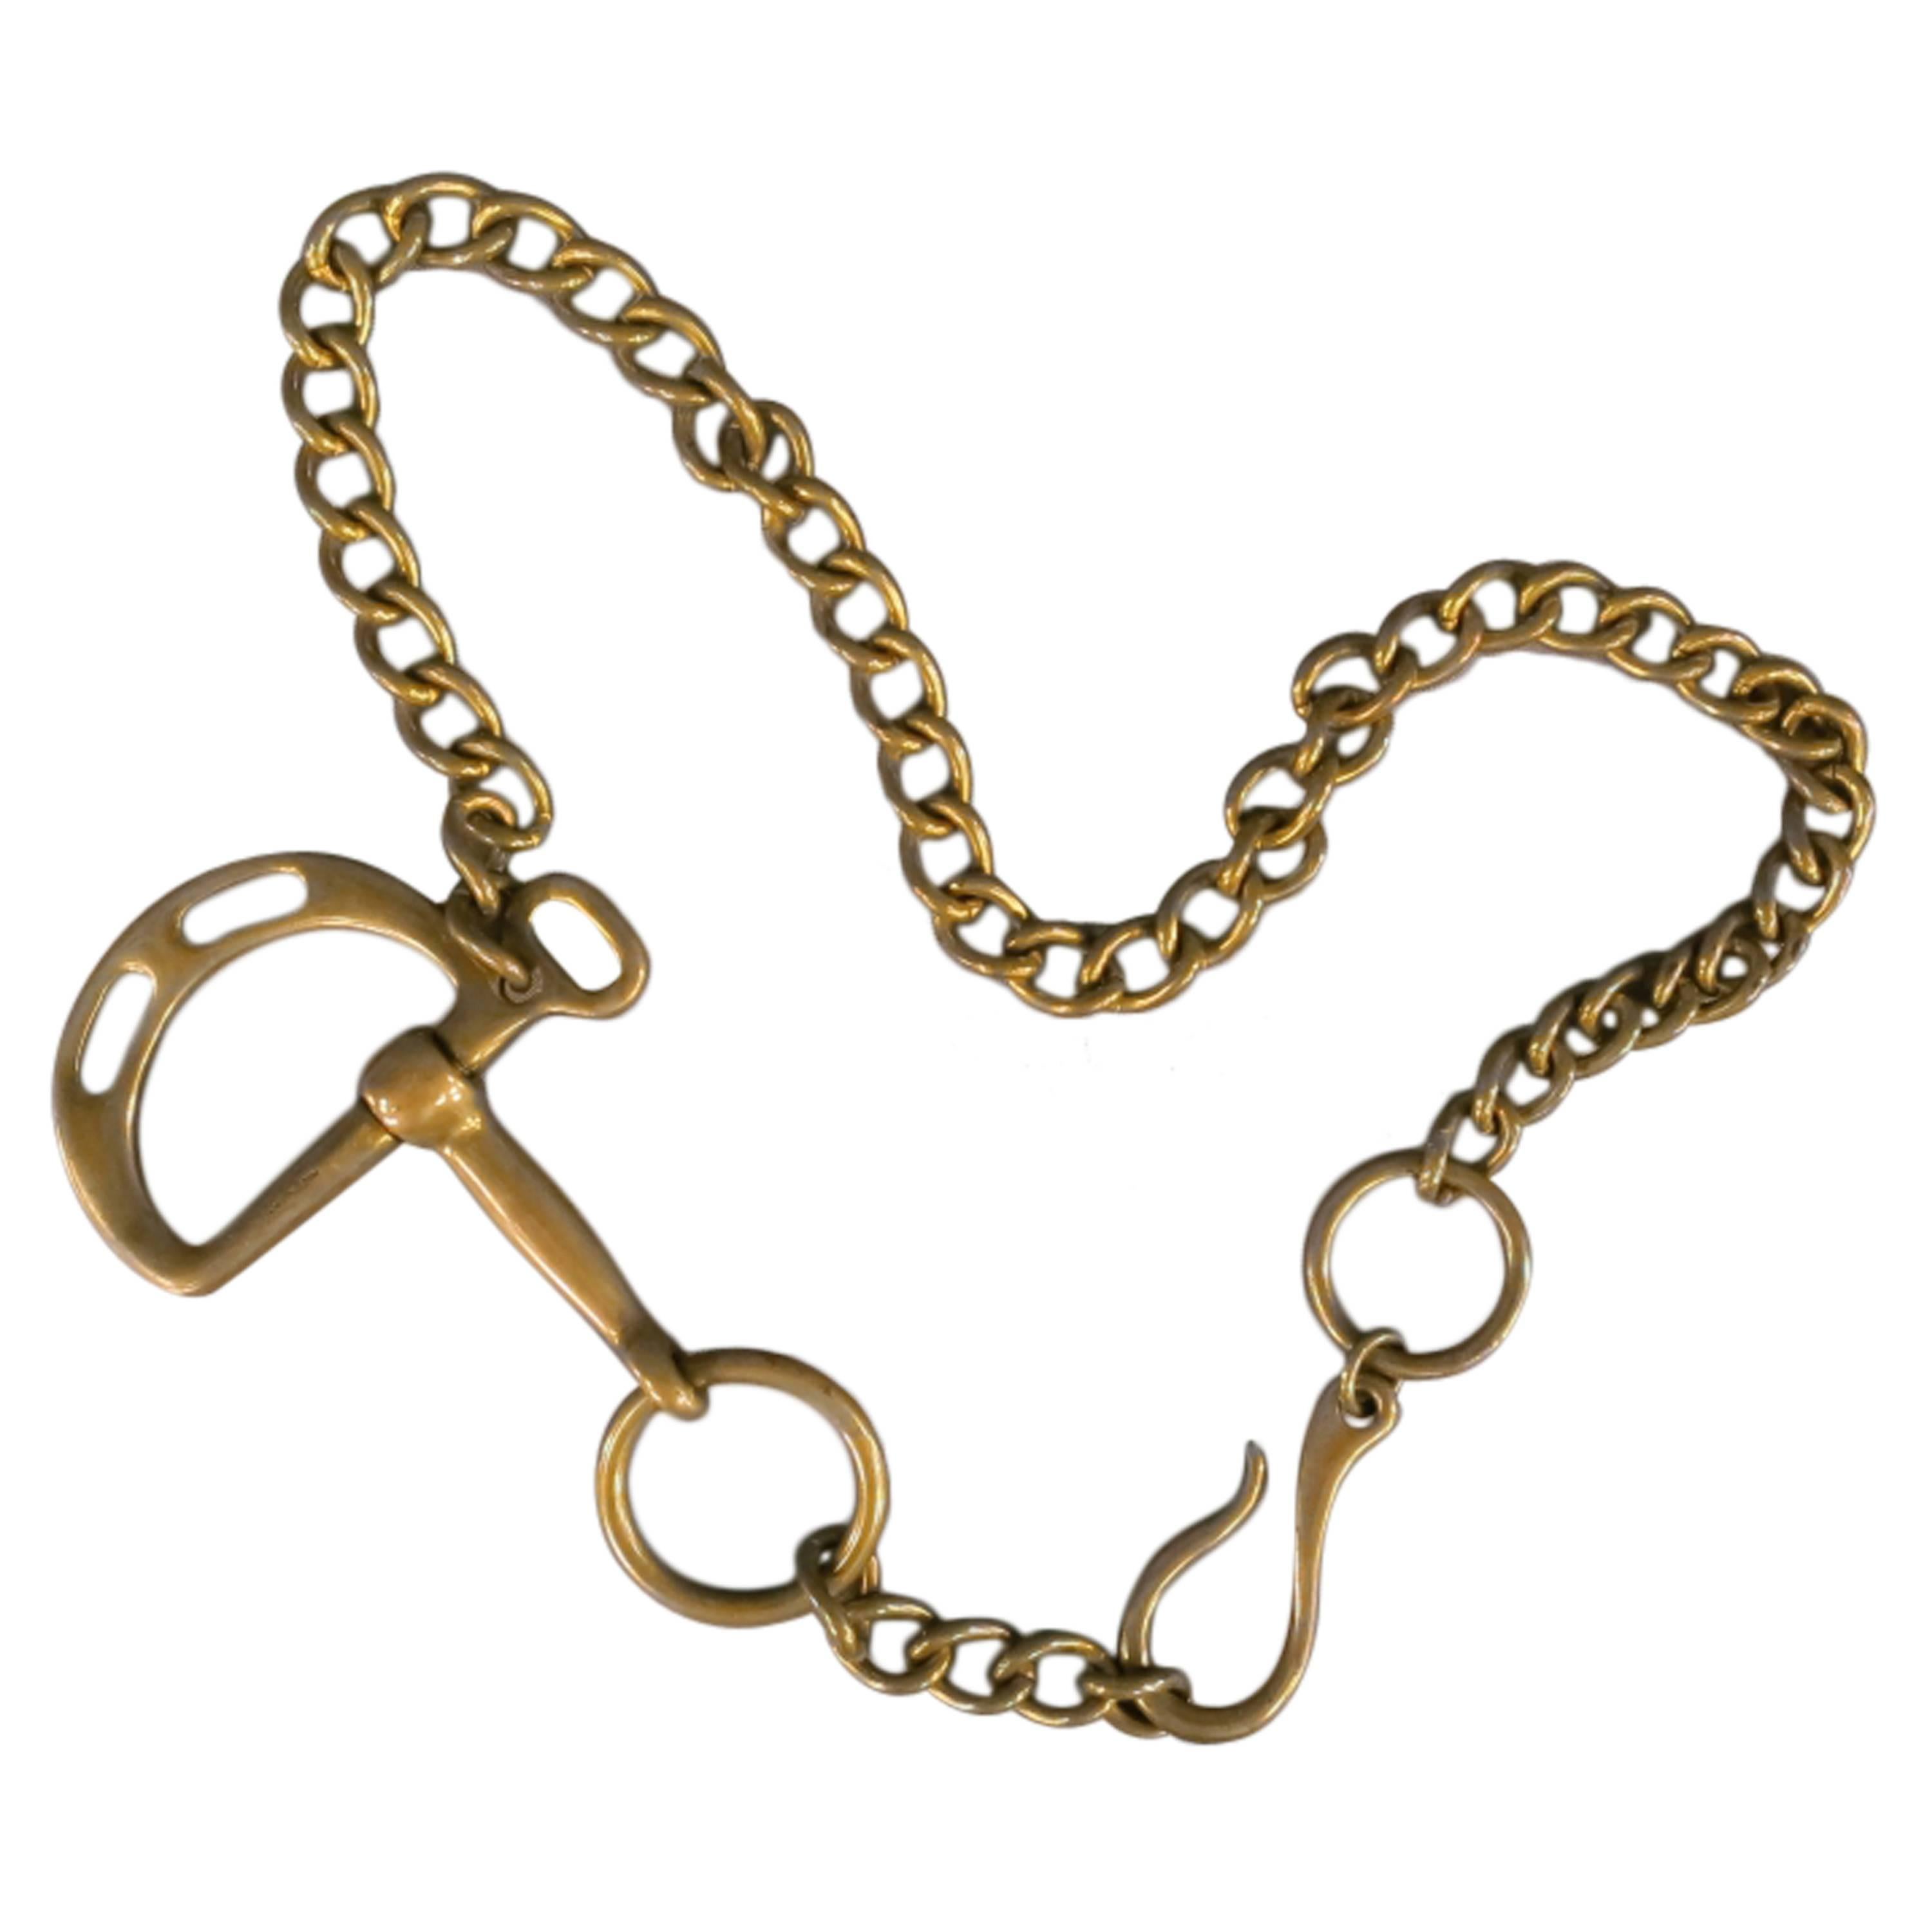 RALPH LAUREN Collection Equestrian Gold Tone Brass Horsebit Belt